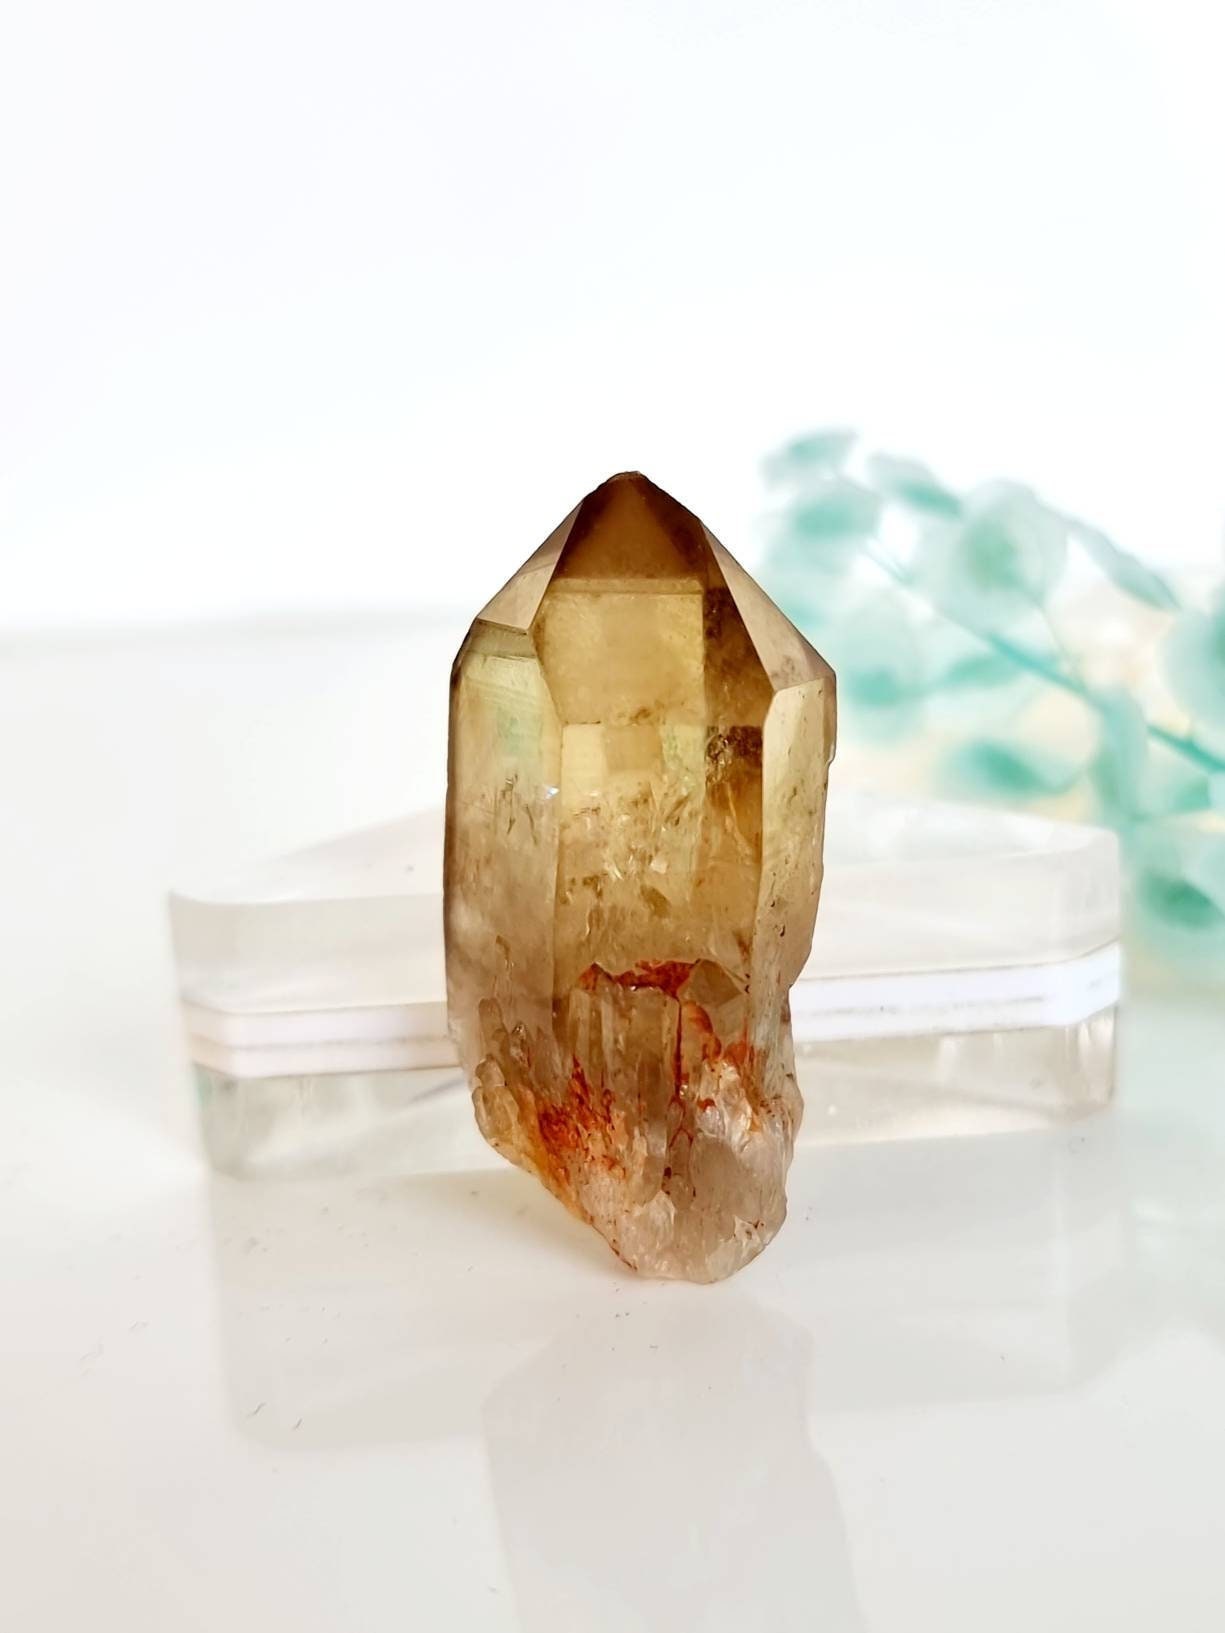 Pointe Brute de Citrine Naturelle Du Congo , Cristal, Lithothérapie, Kundalini Crystal